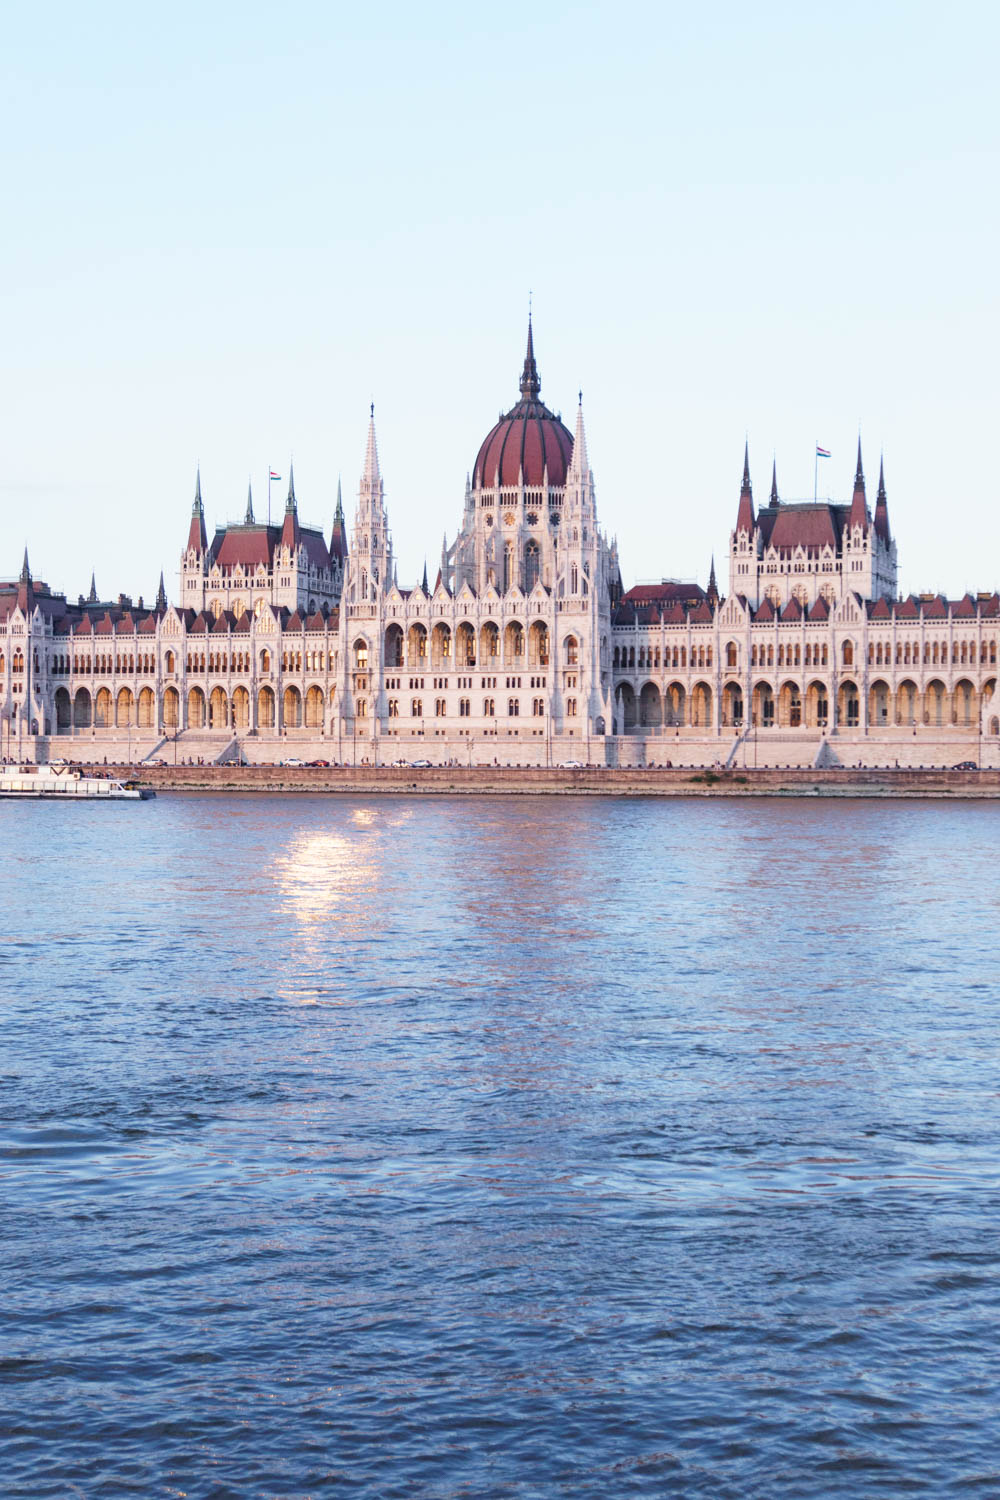 Budapest Hungary / Travel Guide / Parliament Building / RG Daily Blog /